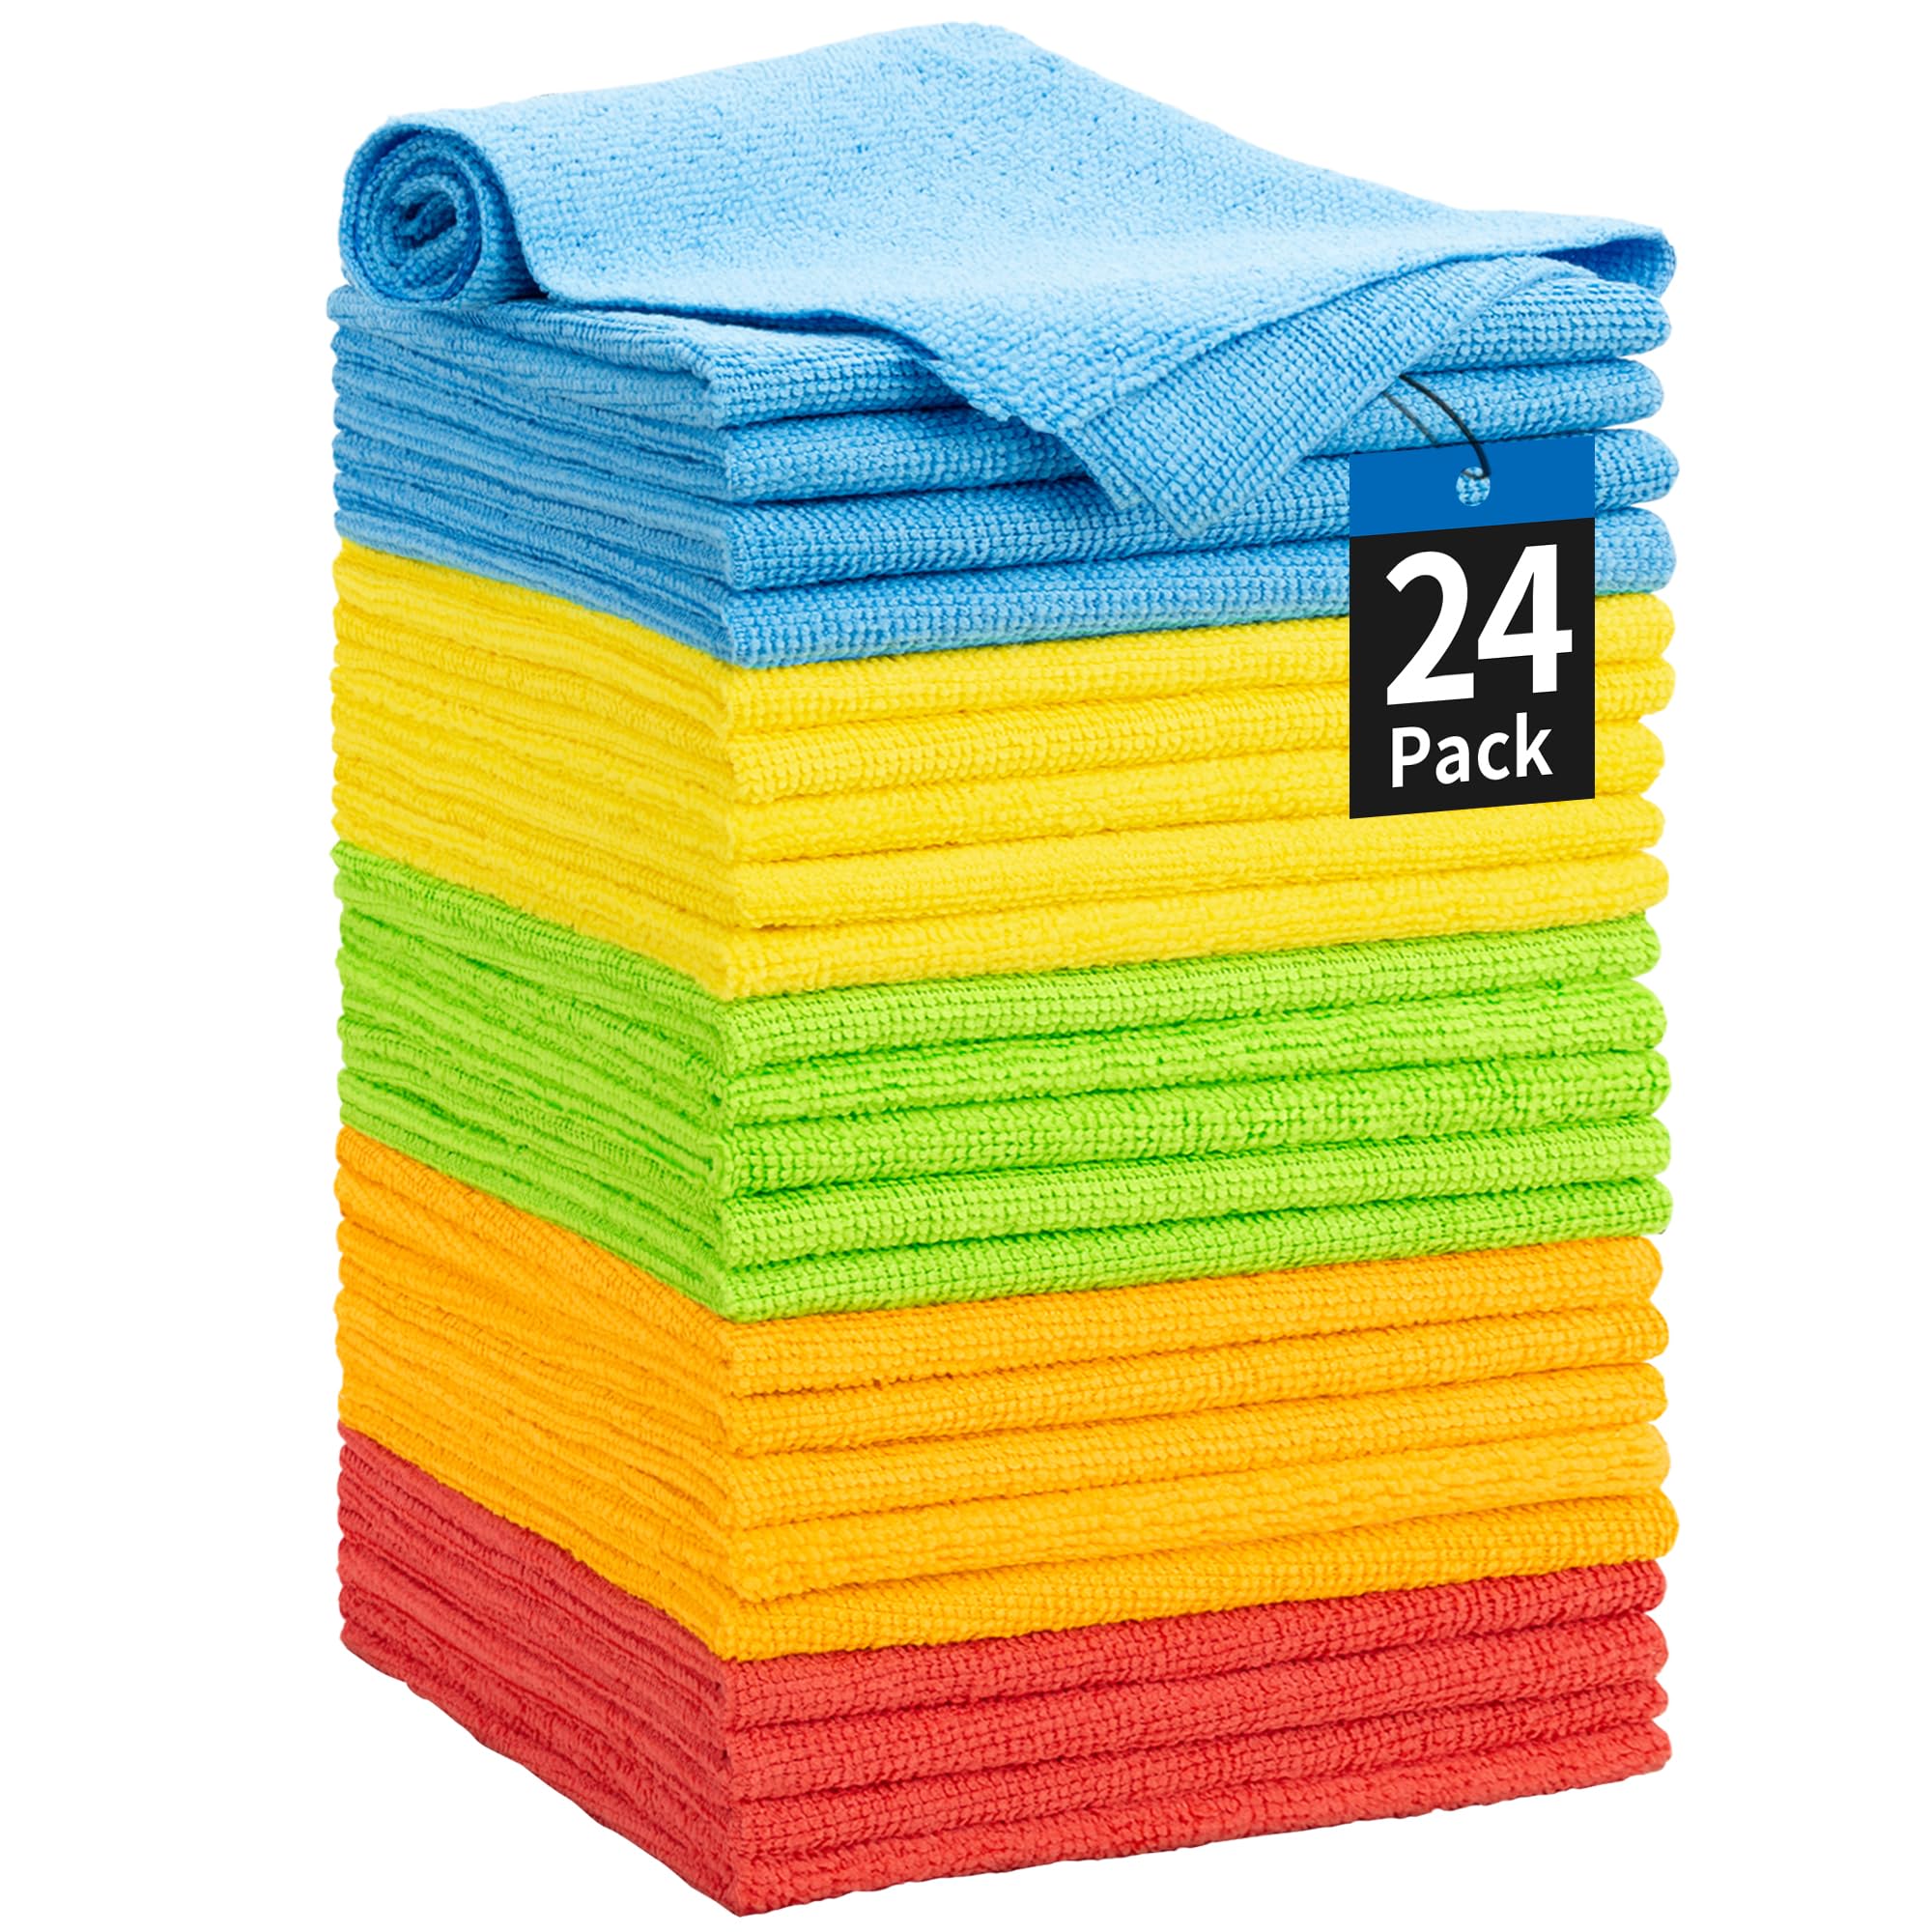 Cleaning Cloth Polishing Car Microfiber Cloth Car Kitchen Towels Micro Fibre Super Absorbent Towel